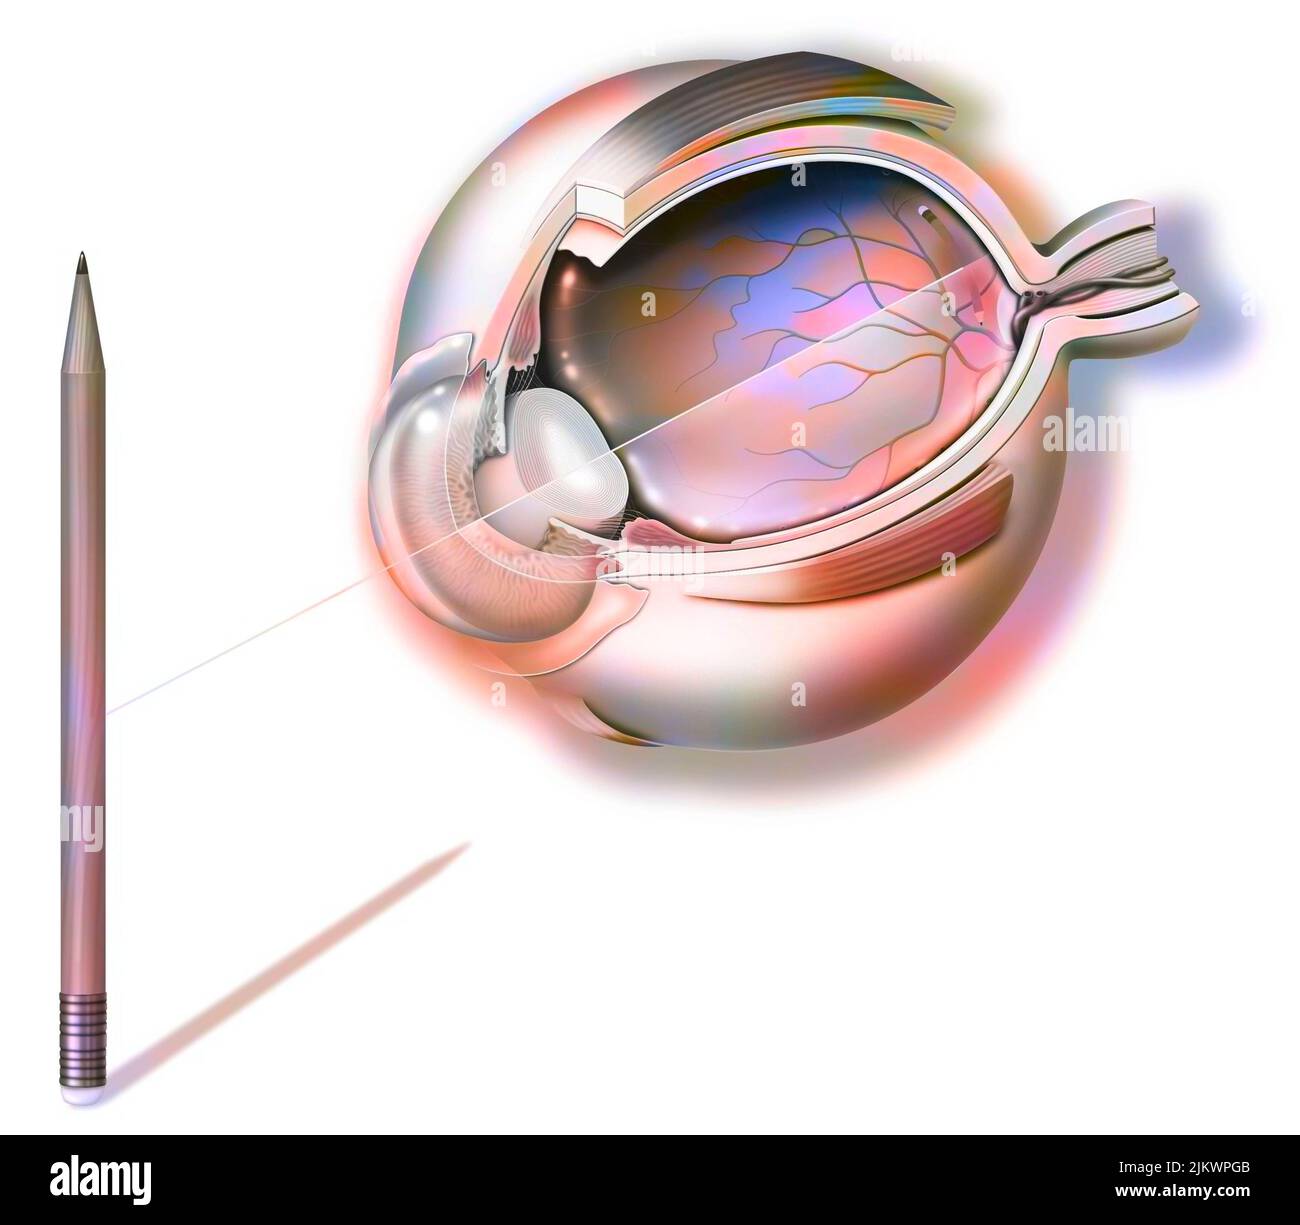 Anatomie des Auges und des Sehvermögens, Bleistiftspiegelung auf der Netzhaut. Stockfoto